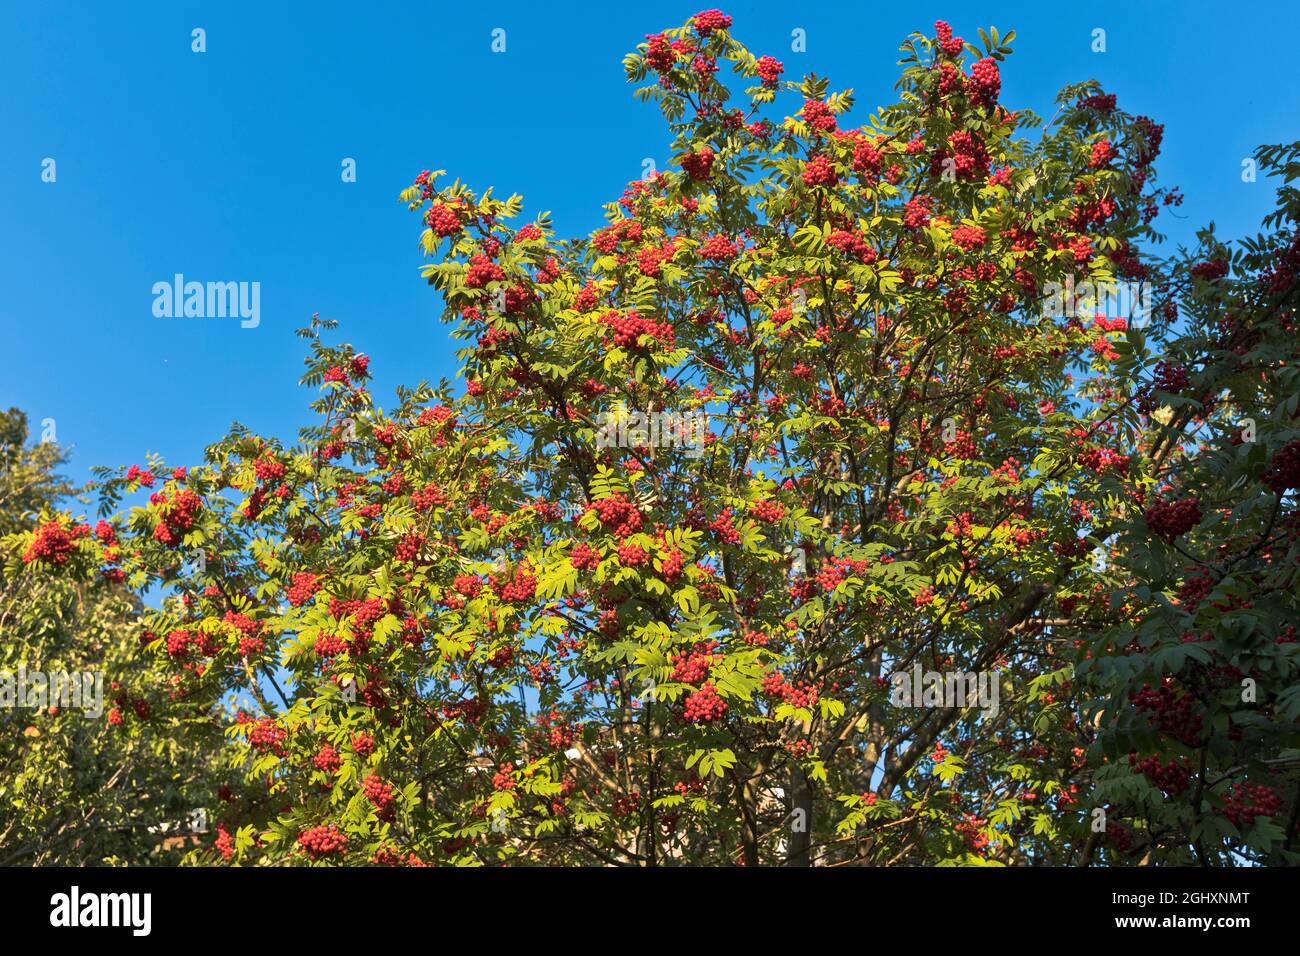 dh Red Fruit ROWAN BERRY FLORA TREES Sommerbaum mit Beeren schottland uk Farbe rot Laub Blattzweig Stockfoto